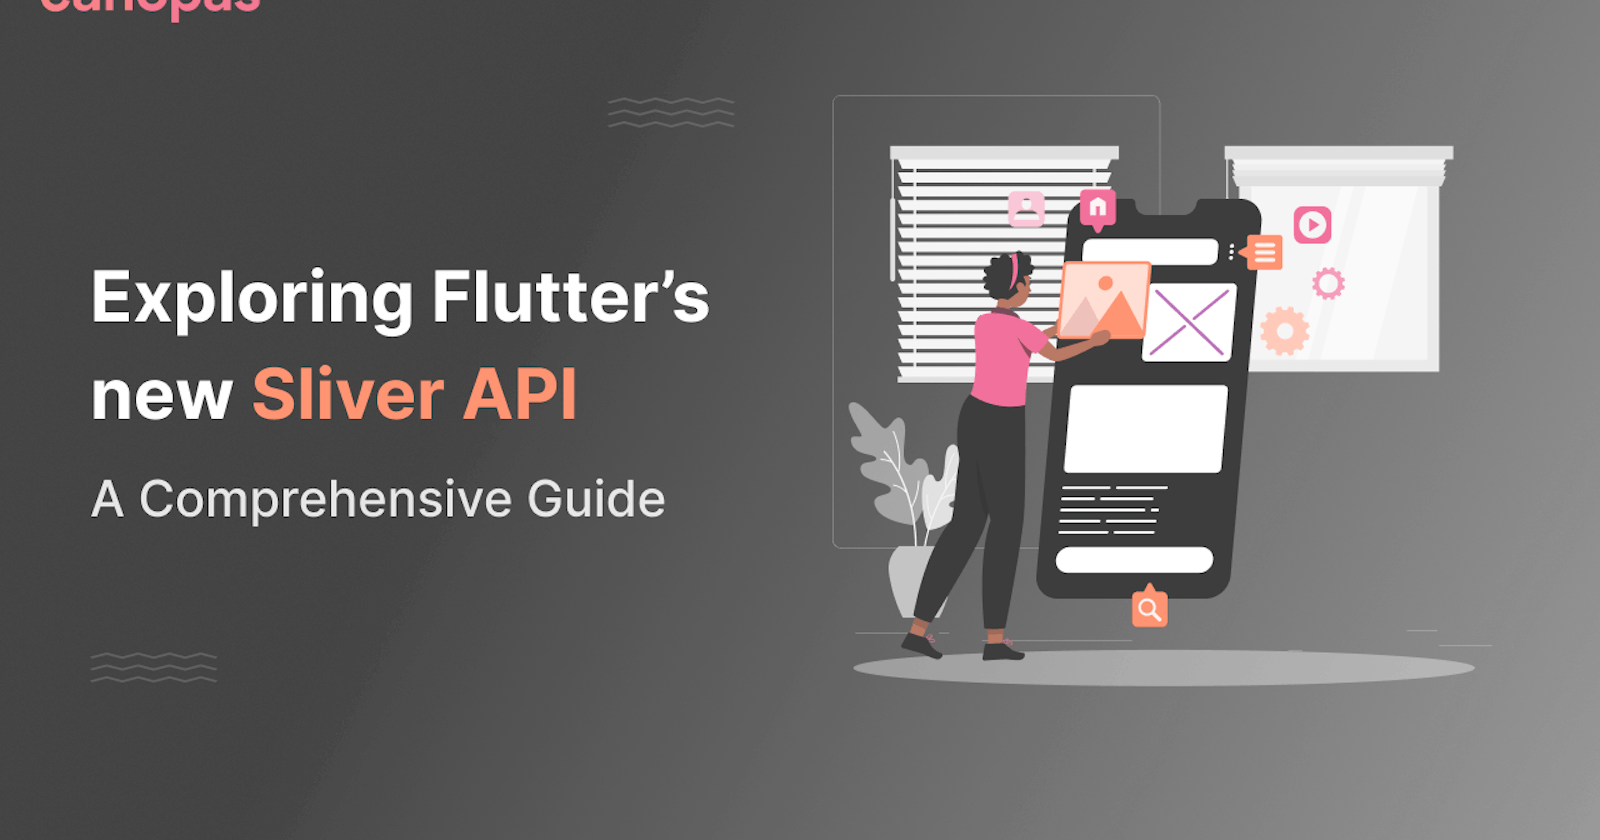 Exploring Flutter’s new Sliver API:
A Comprehensive Guide